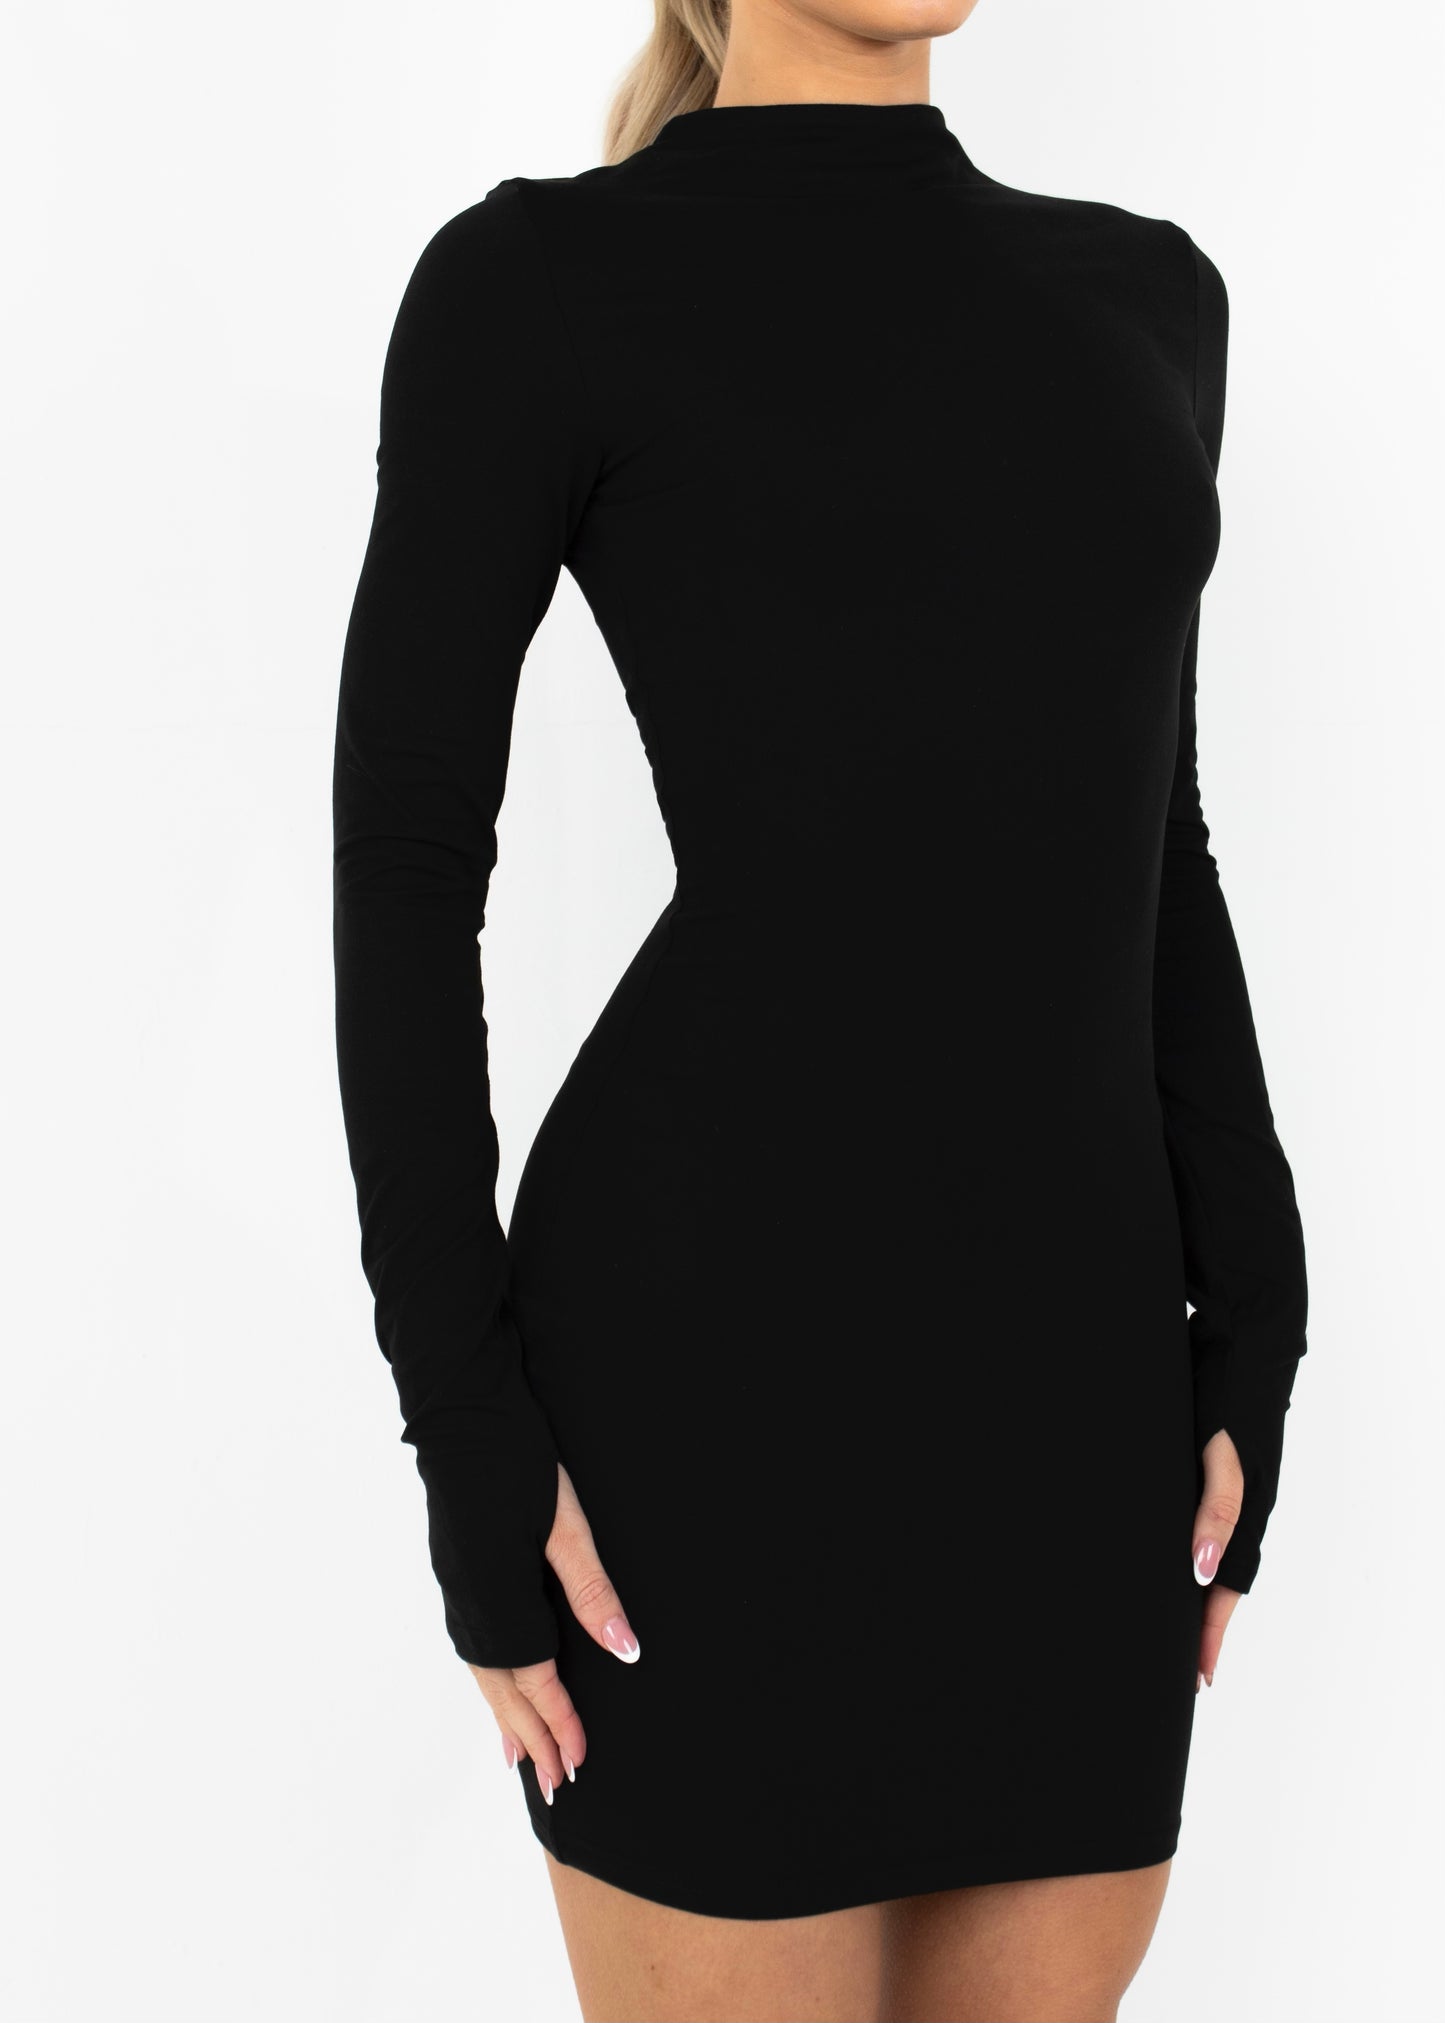 LEIA - Black Bodycon Mini Dress